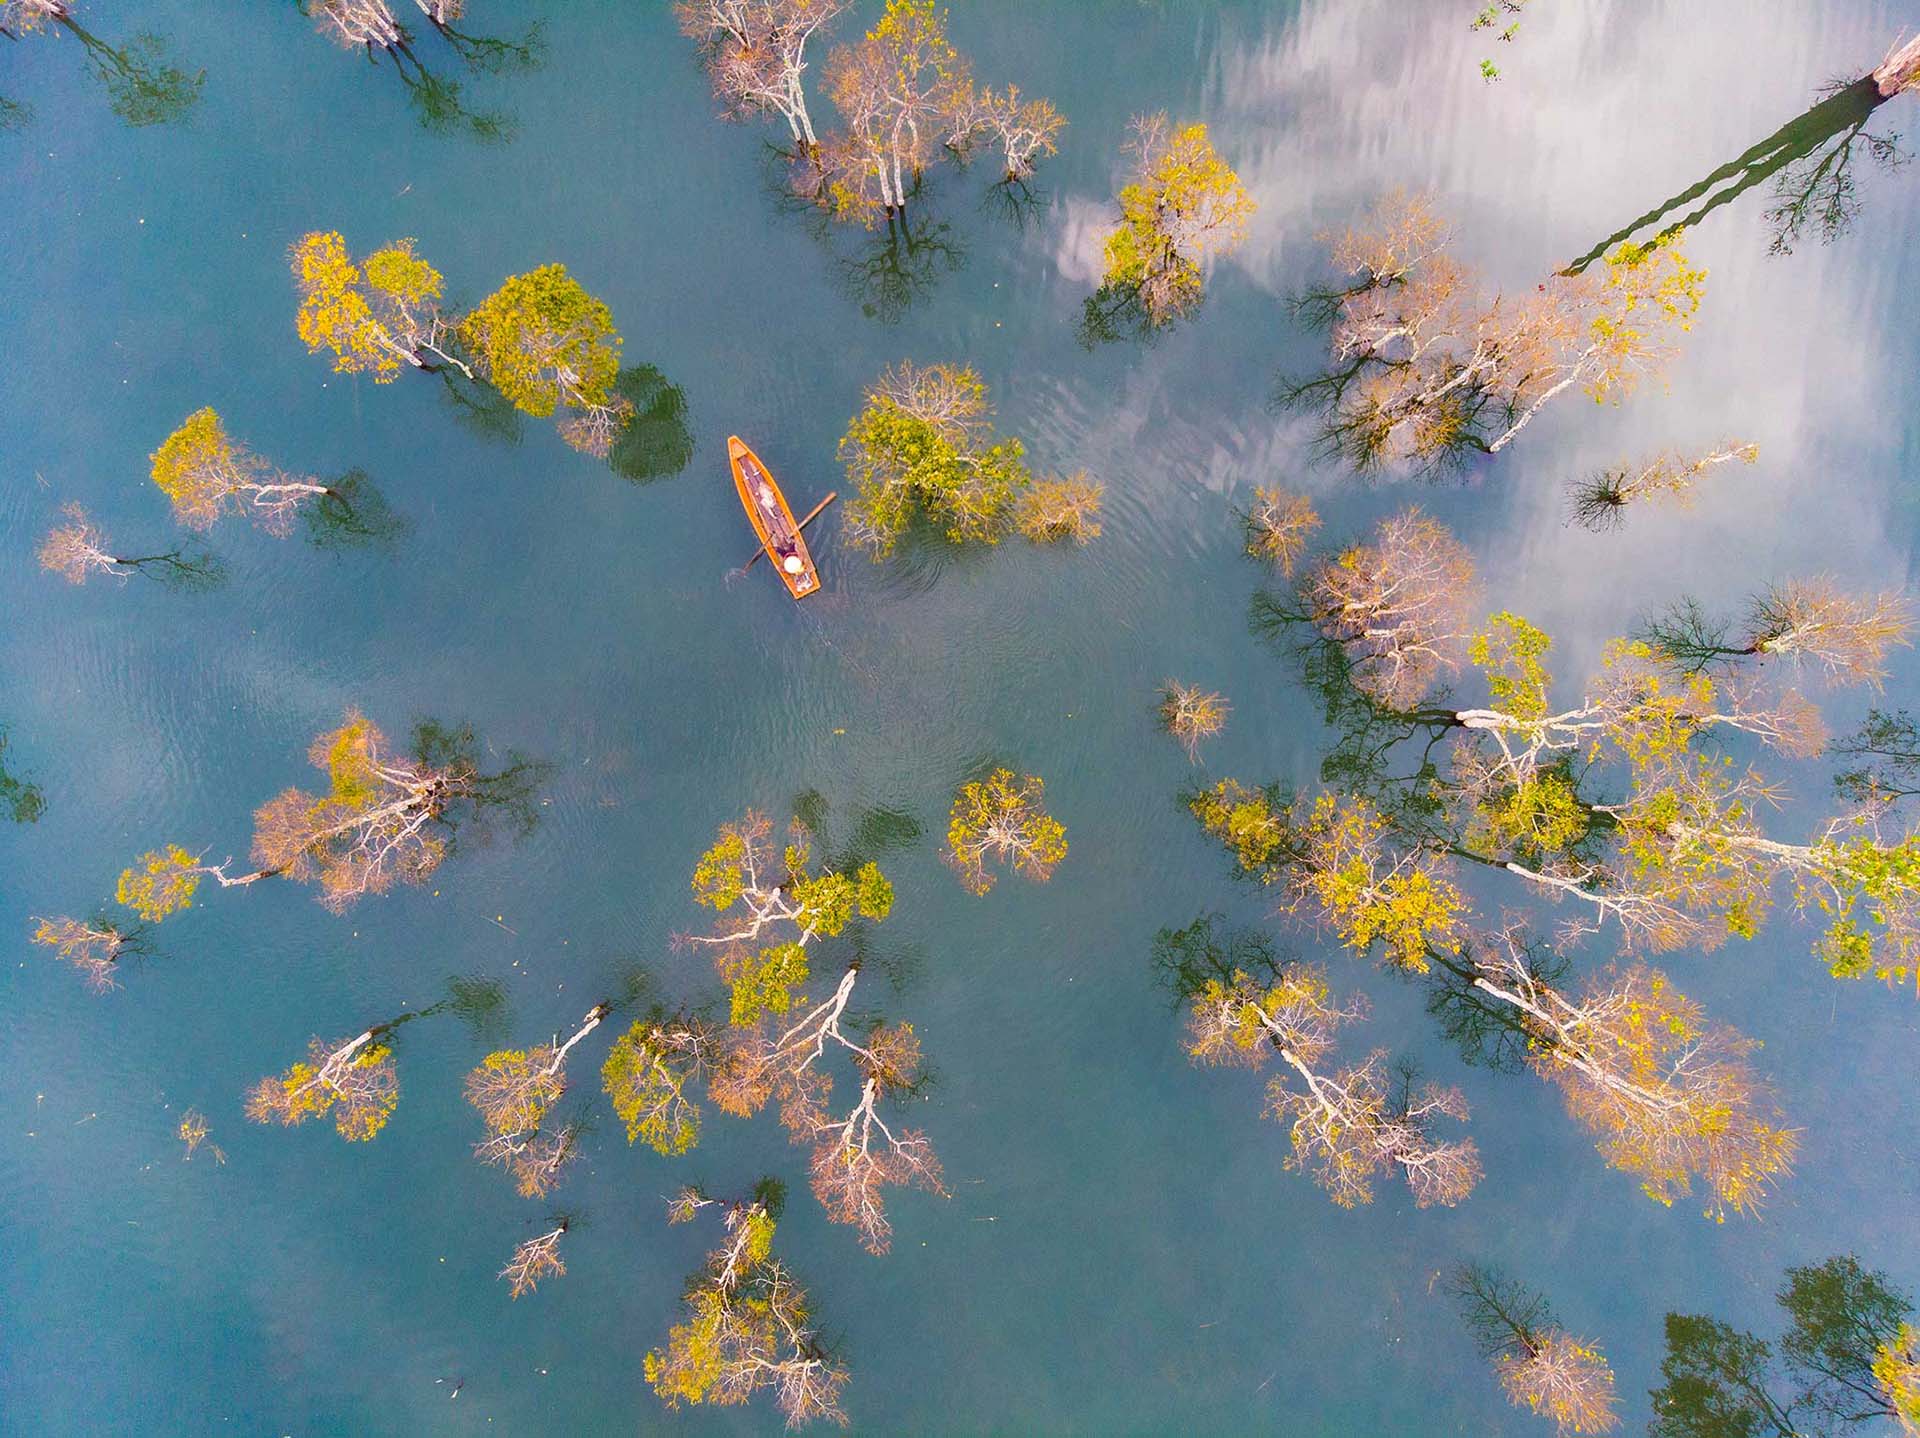 Dalat_TuyenLam_lake_landscape_dronephotography_luminousvietnam_phototour